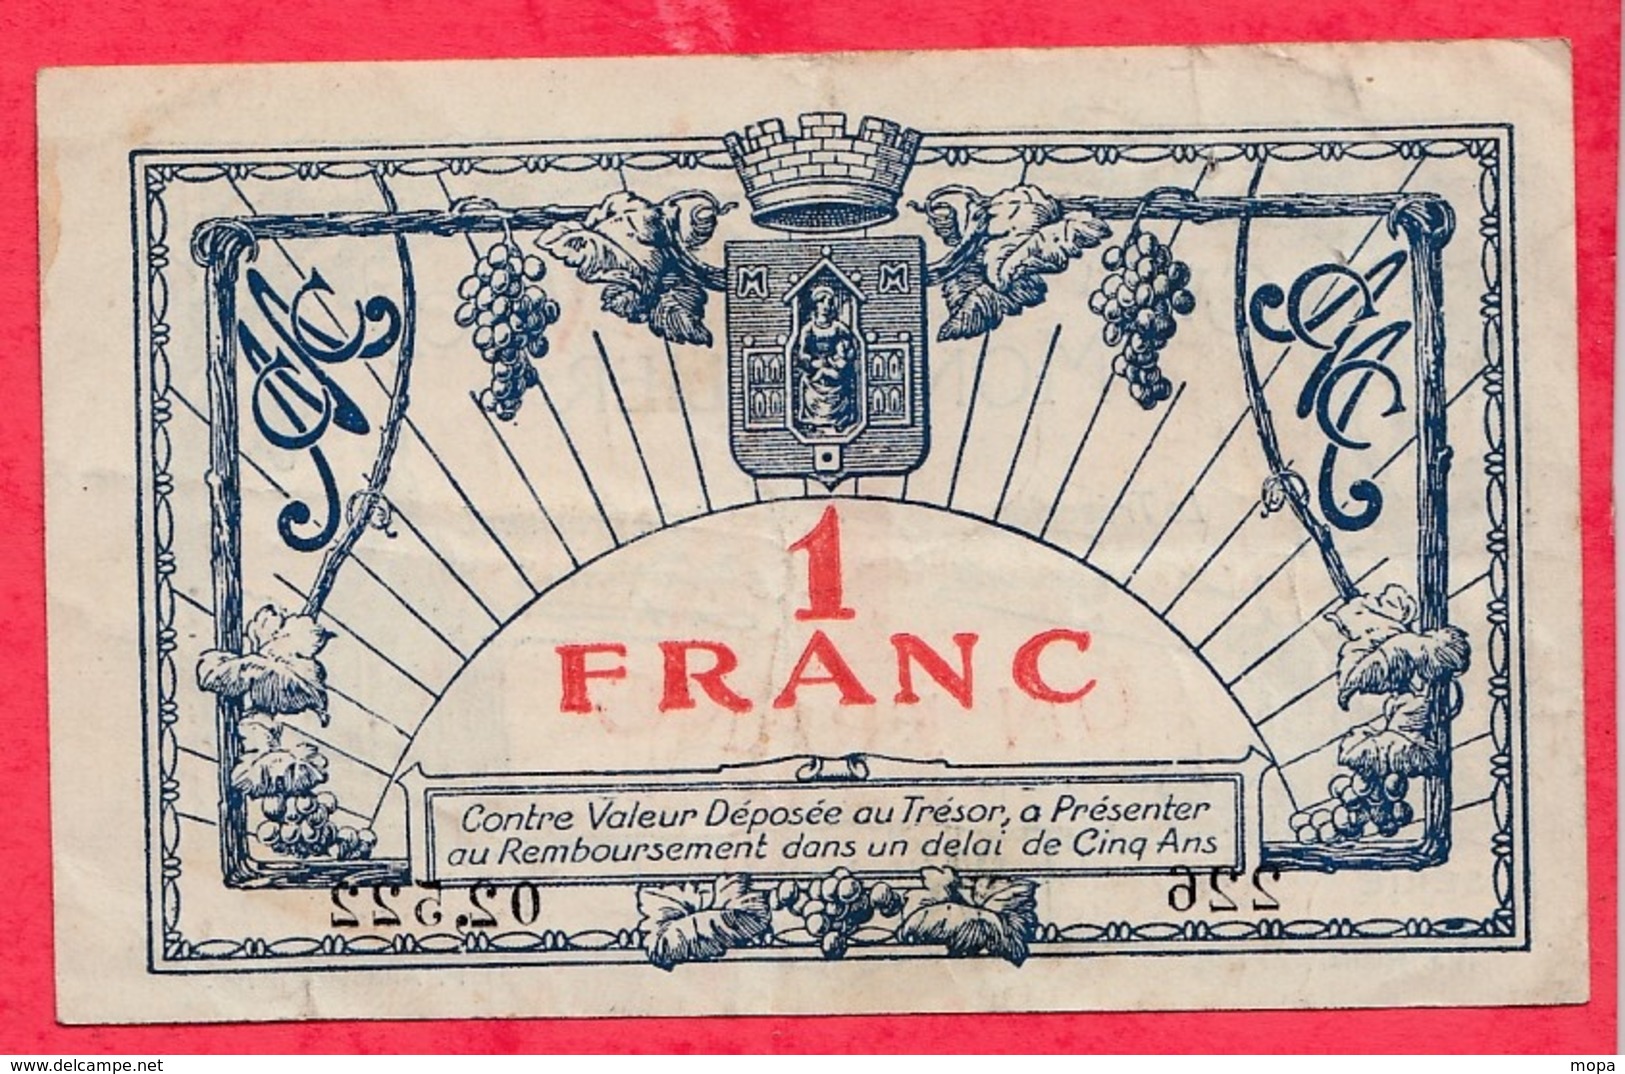 1 Franc Chambre De Commerce De Montpellier  Dans L 'état (134) - Chambre De Commerce